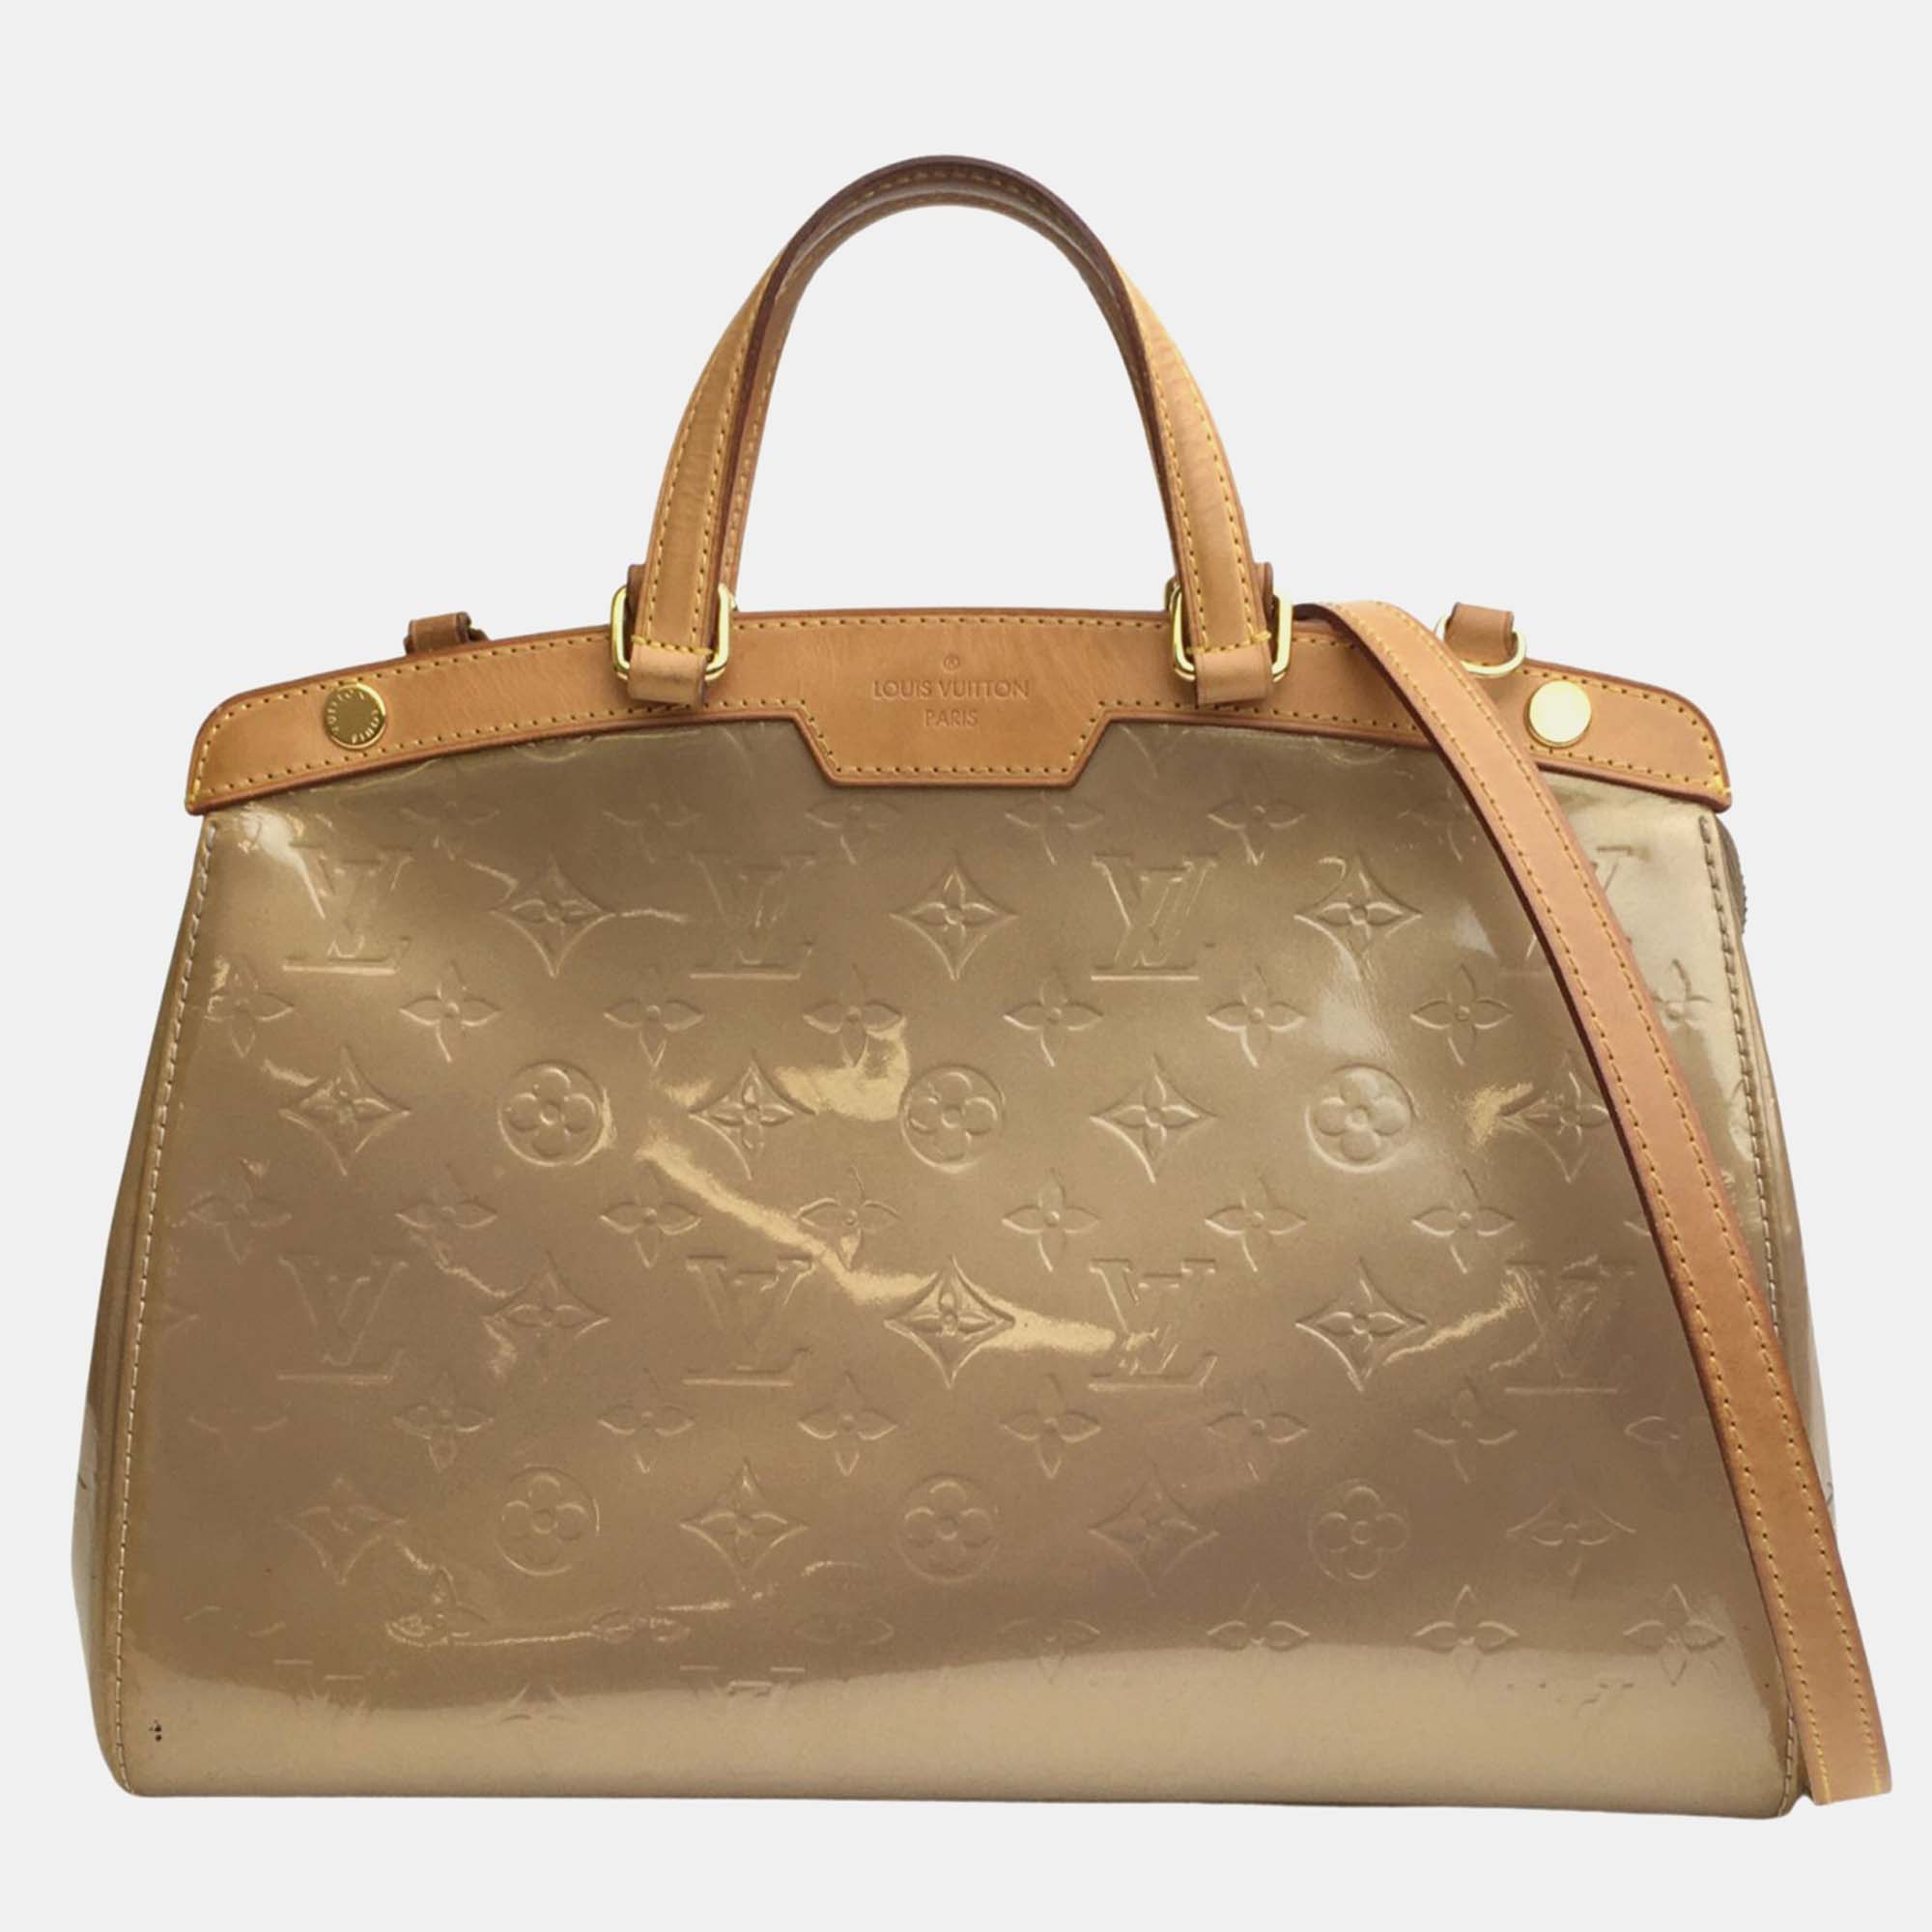 Louis vuitton gold monogram vernis leather brea mm satchel